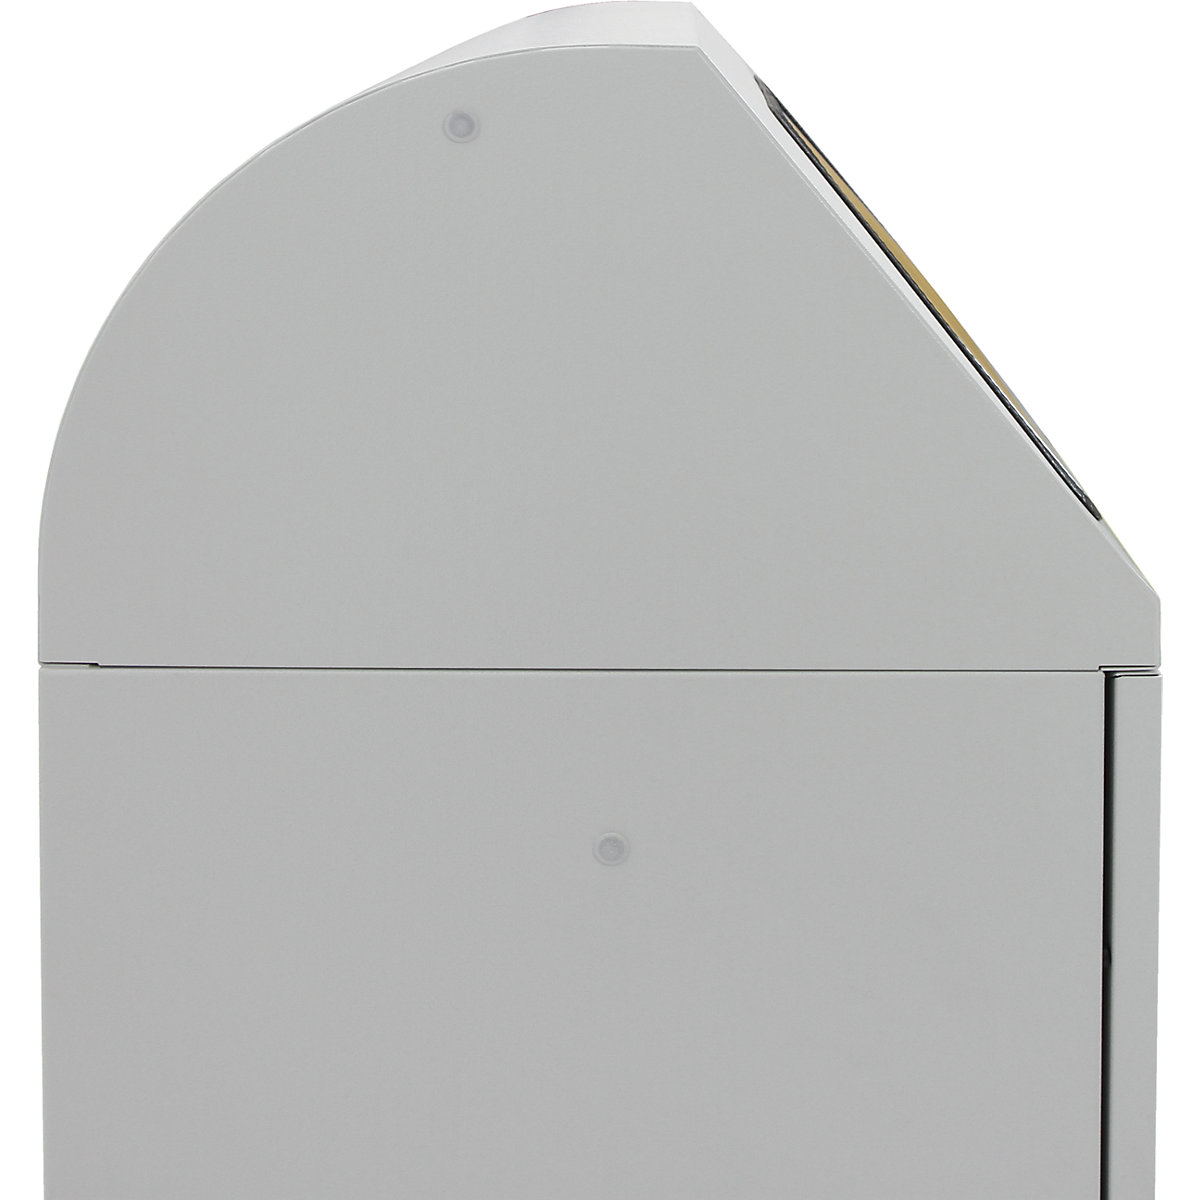 Systémová nádoba na tříděný odpad, ručně ovládaná vhazovací klapka (Obrázek výrobku 11)-10